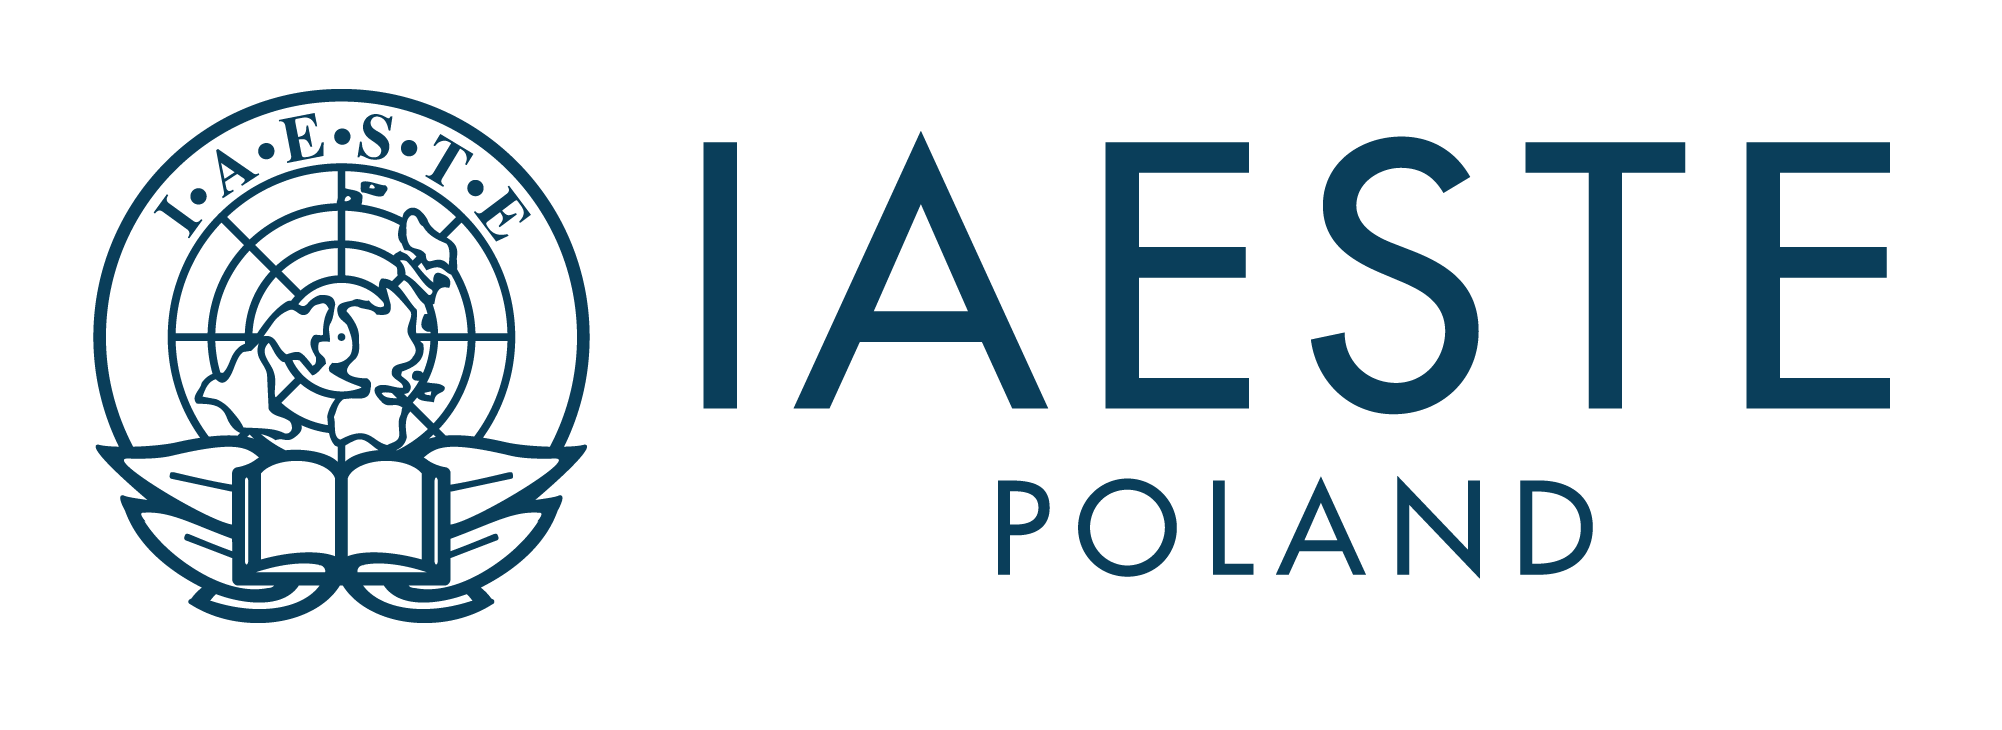 IEASTE Poland logo